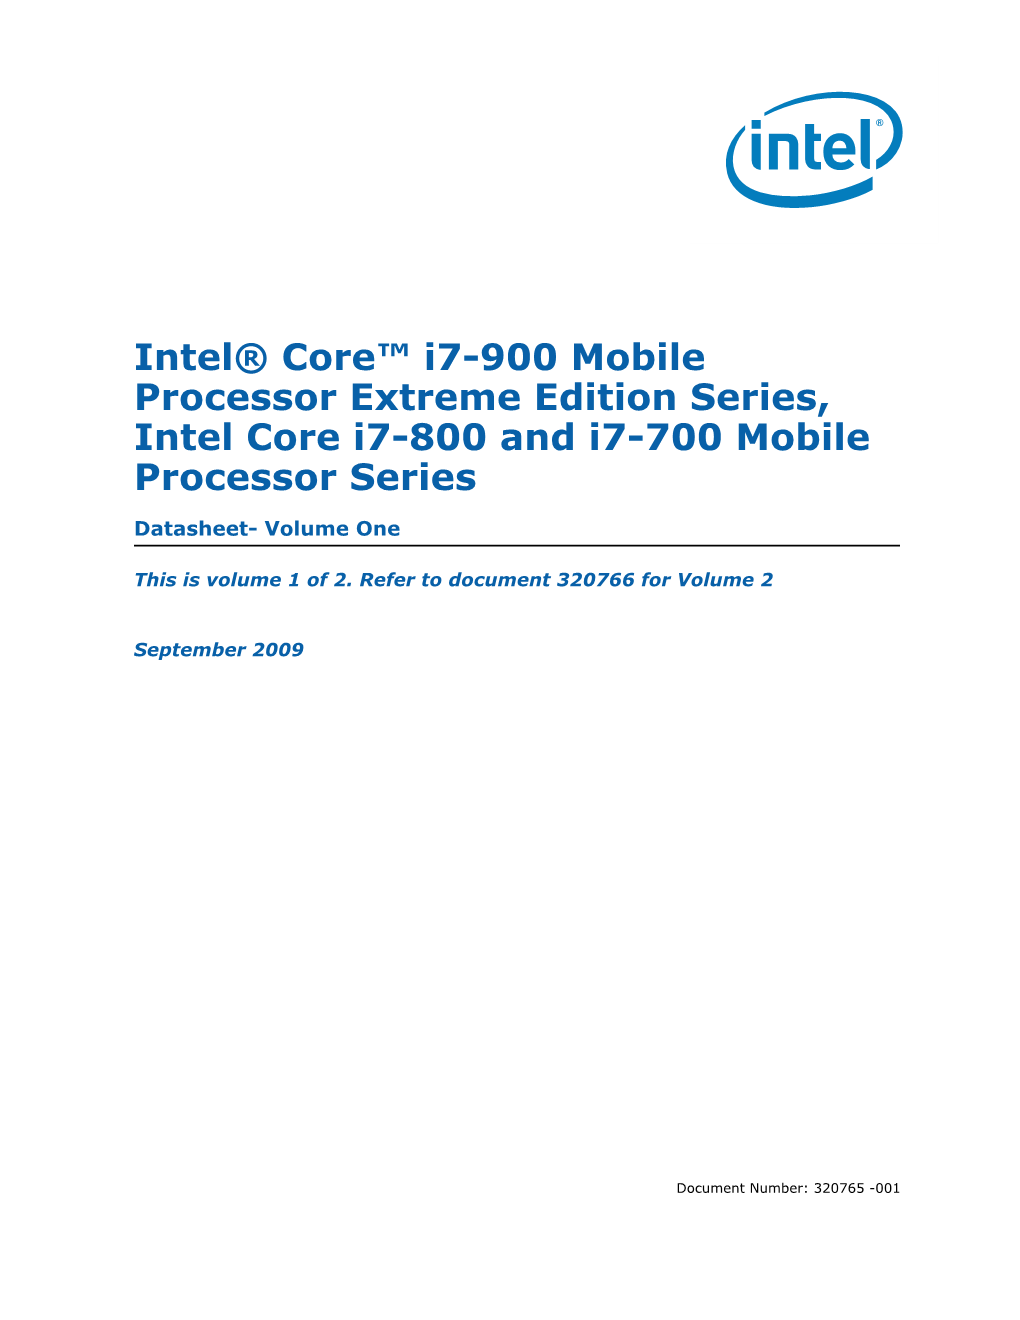 Intel® Core™ I7-900/I7-800/I7-700 Mobile Processor